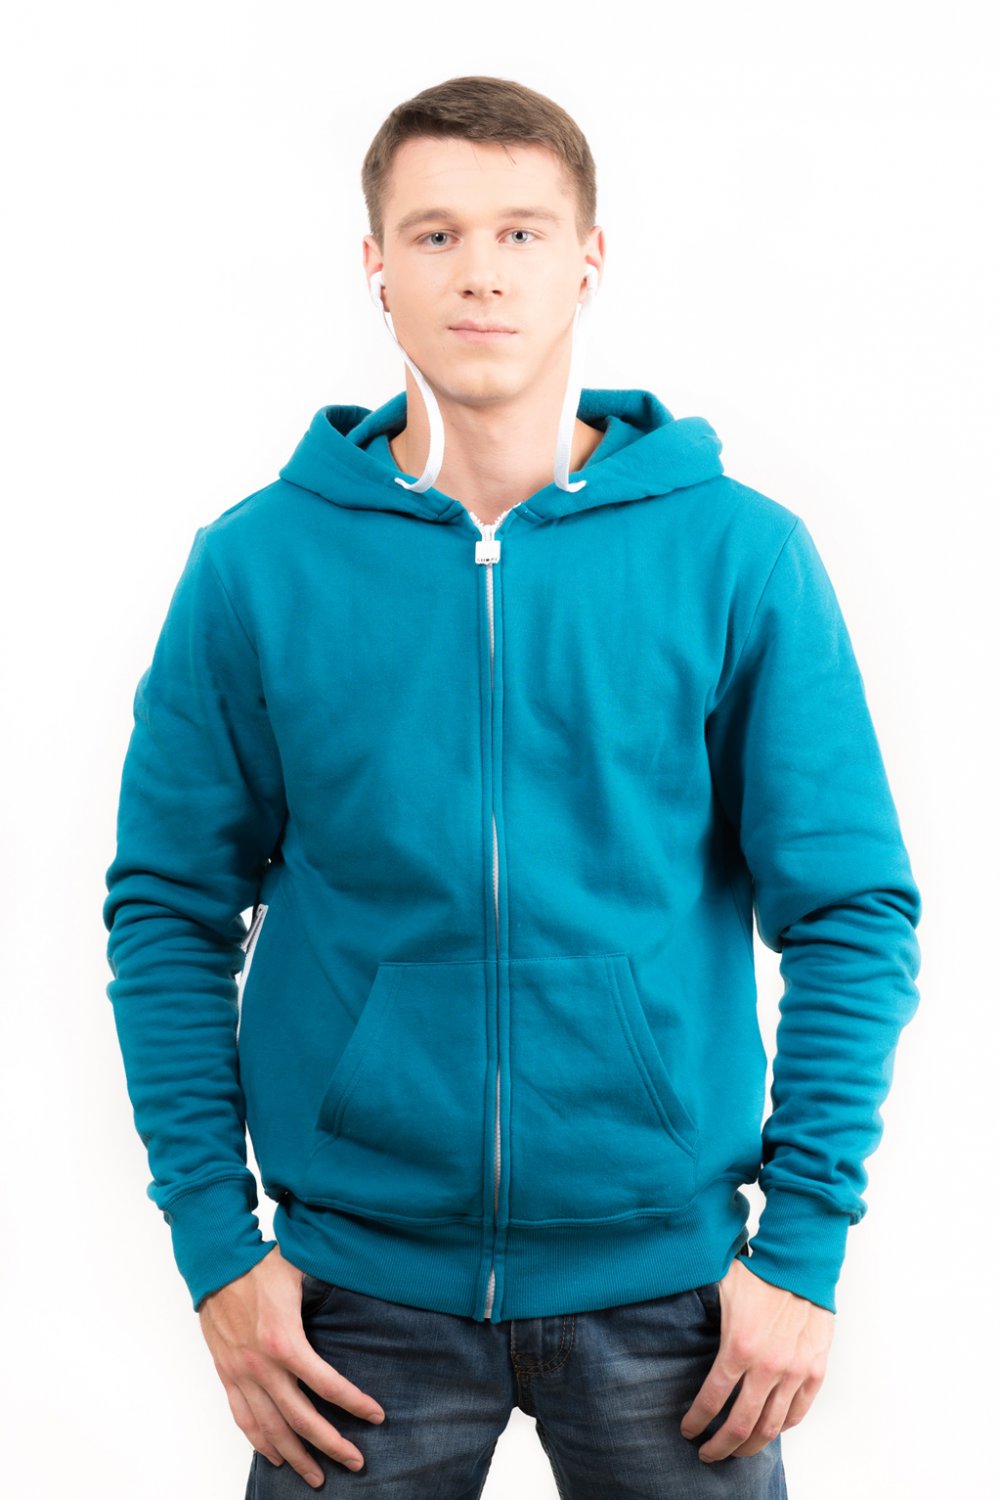 Толстовка Standart голубая с наушниками AJ3112NVAB9999A - купить в интернет-магазине Odensya.ru